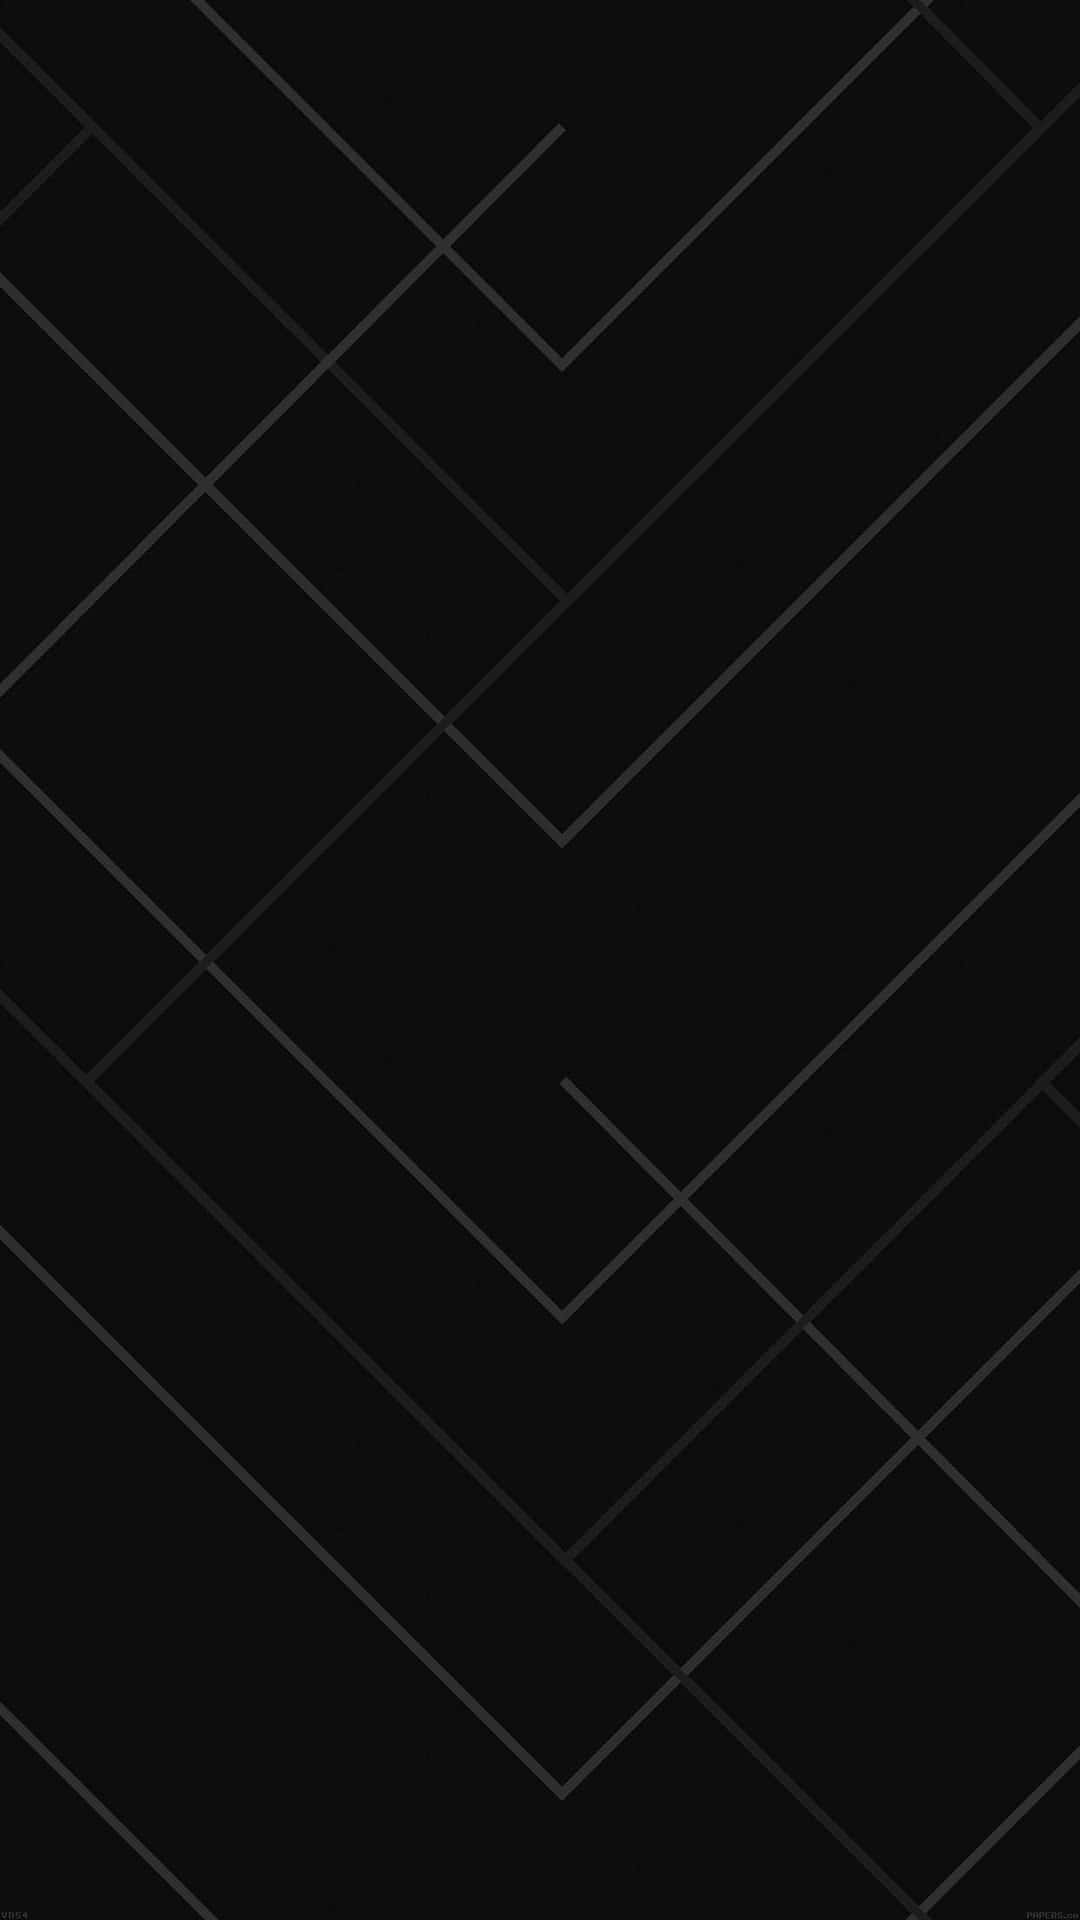 Patróngeométrico Abstracto En Blanco Y Negro Fondo de pantalla